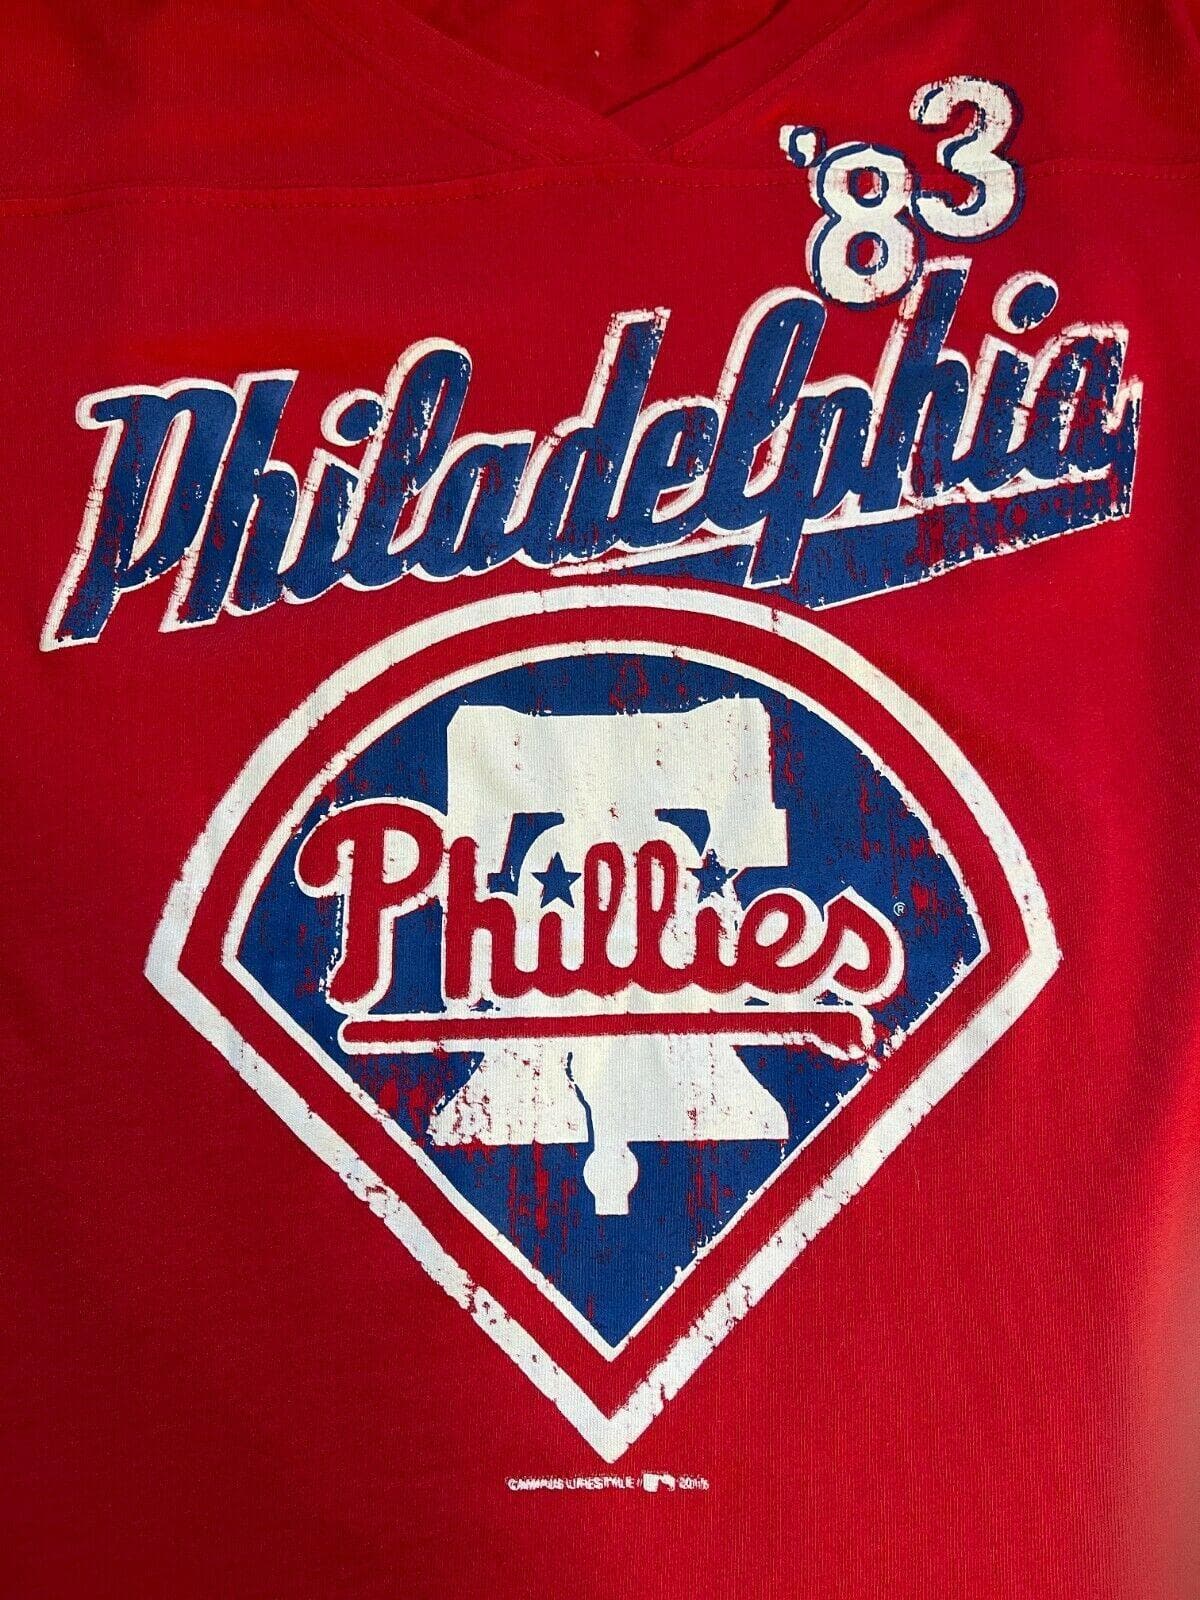 MLB Philadelphia Phillies V-Neck T-Shirt Women's Medium